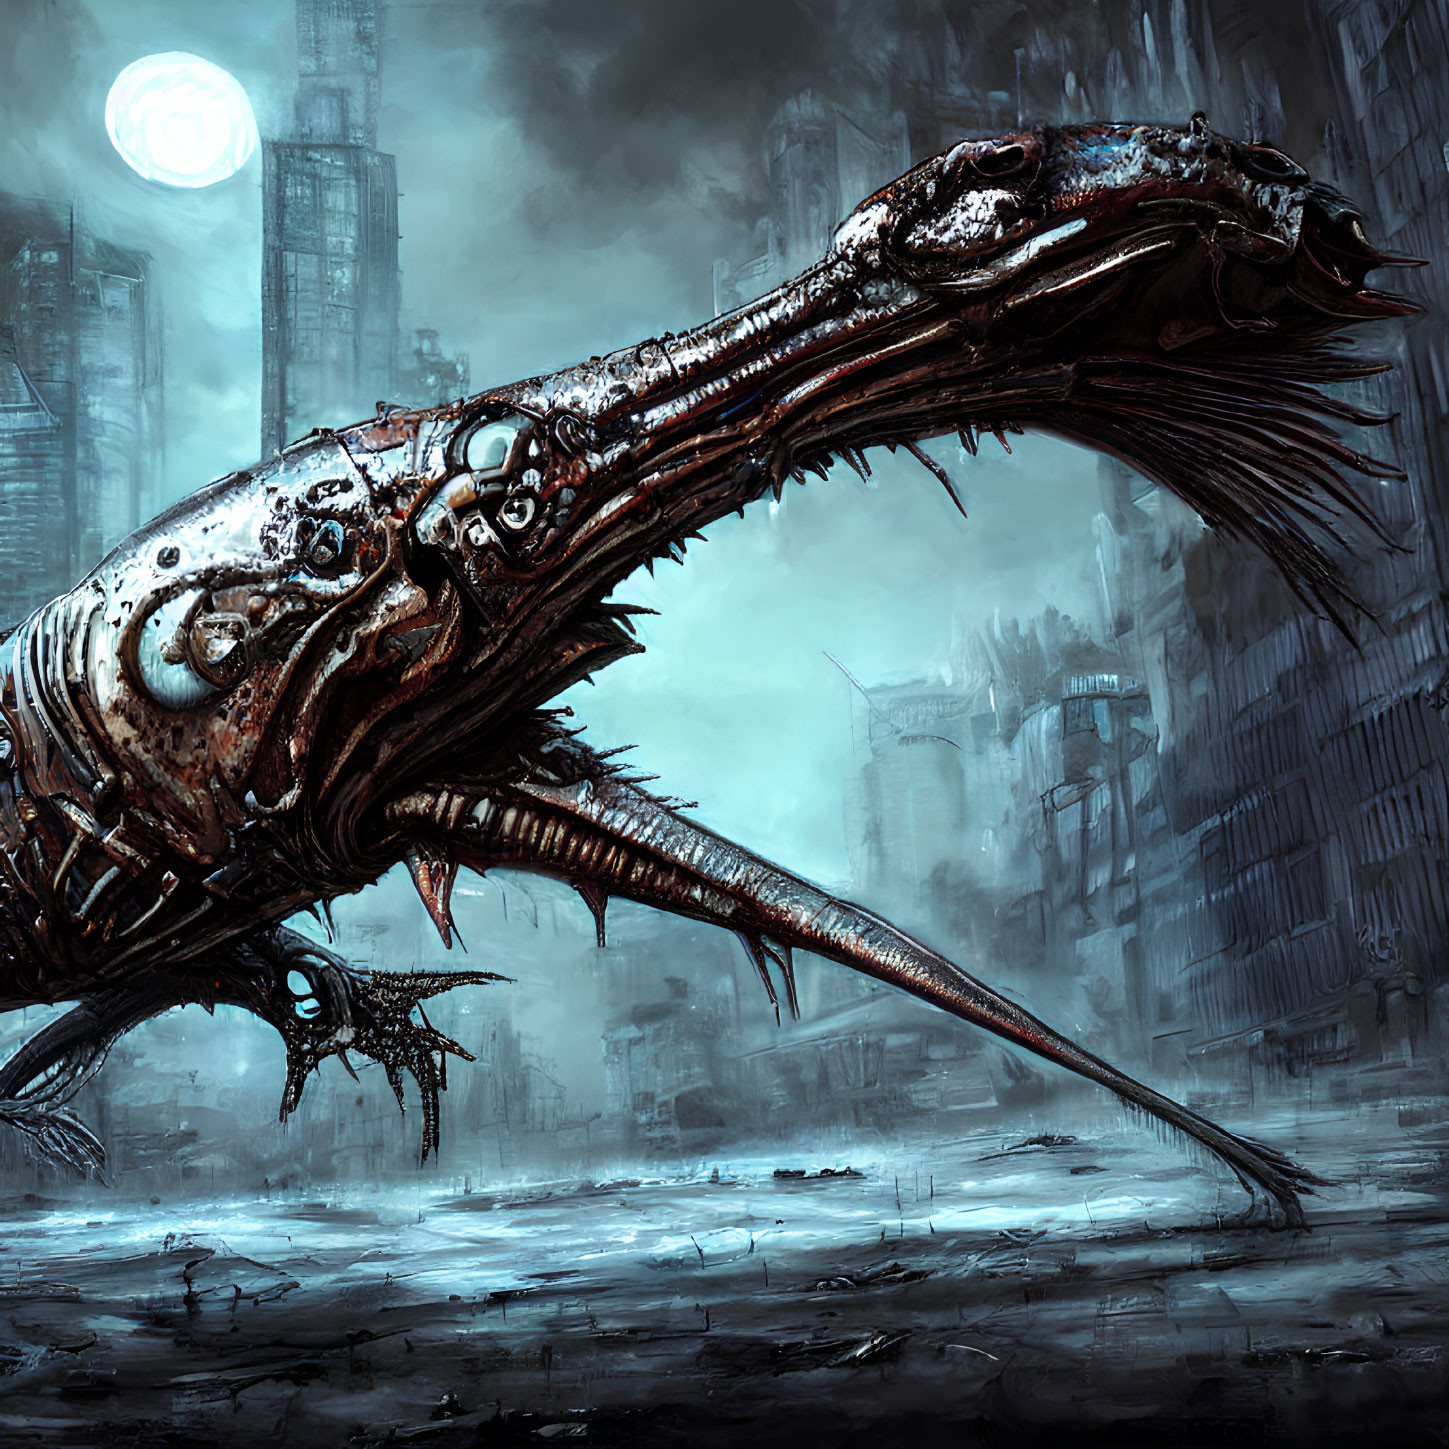 Cybernetic dragon in dystopian cityscape under pale moon